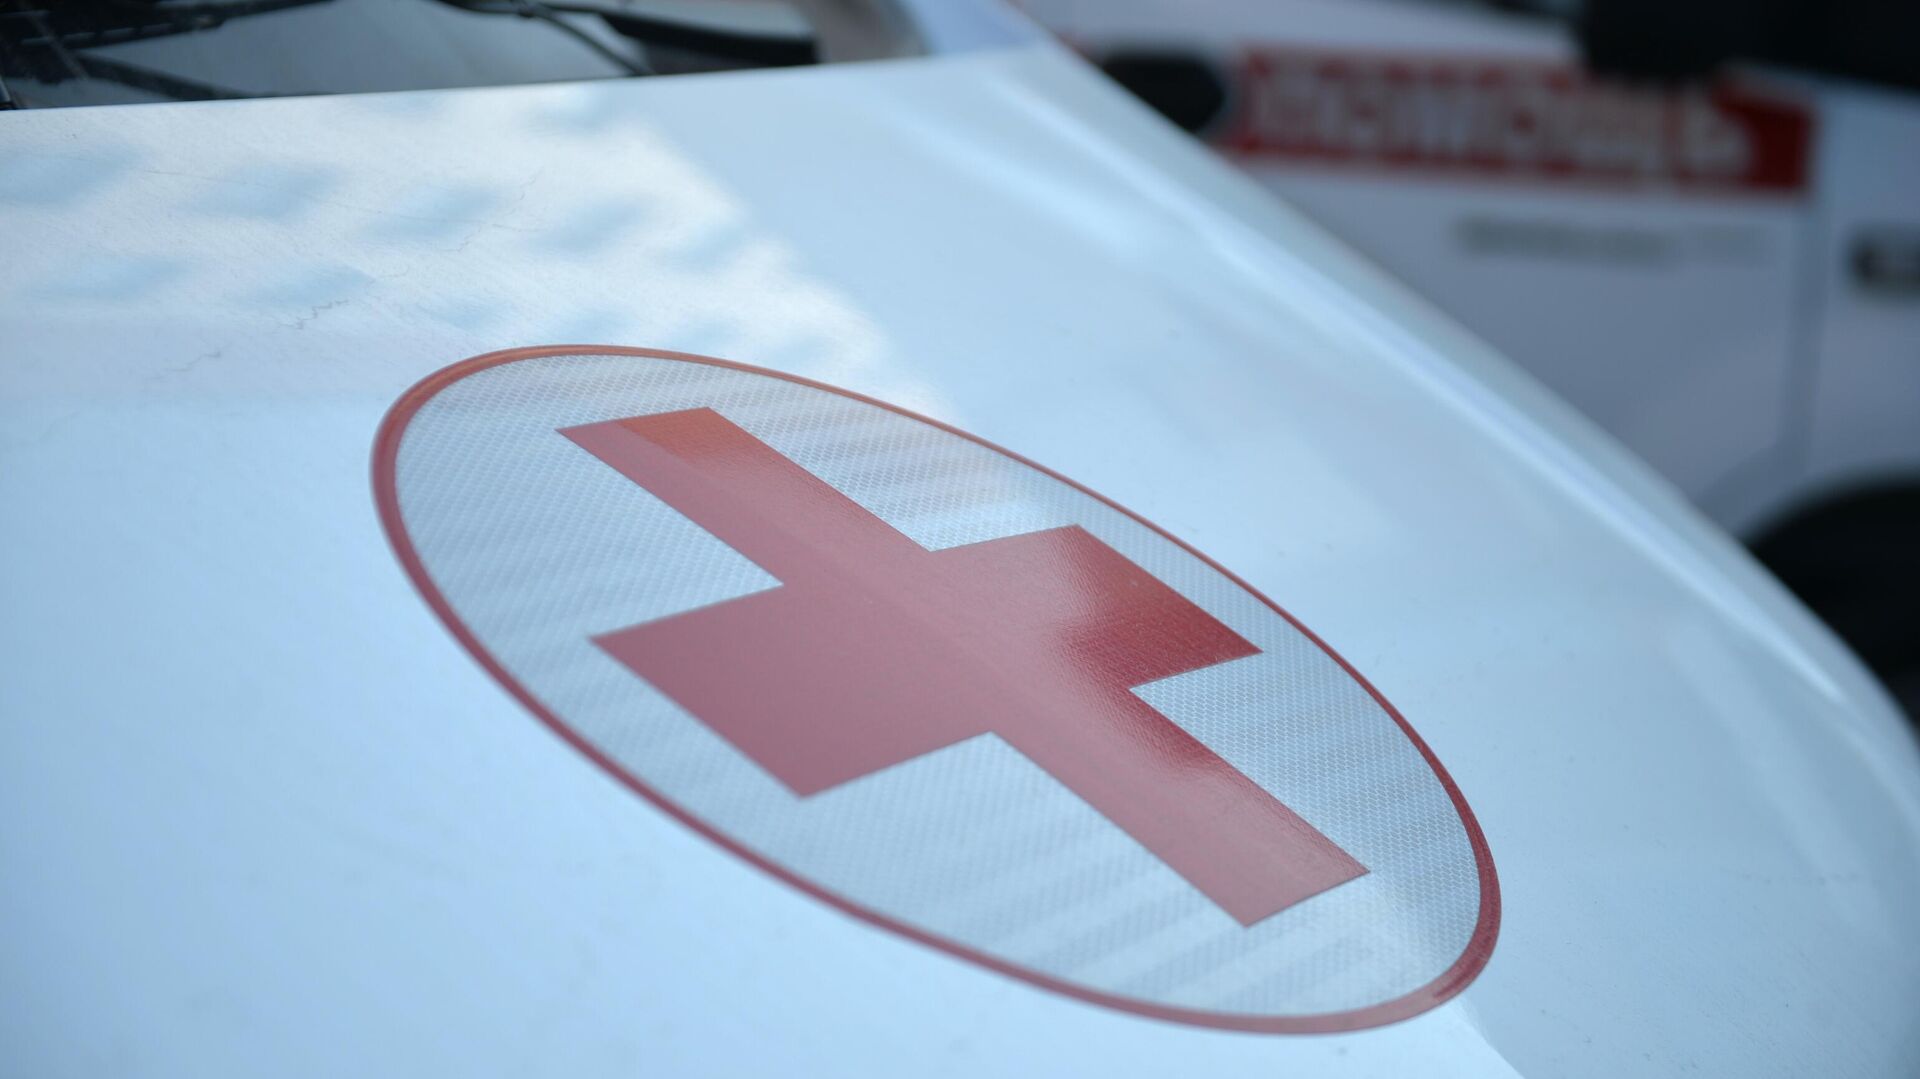 Красный крест на автомобиле скорой медицинской помощи - РИА Новости, 1920, 27.02.2021